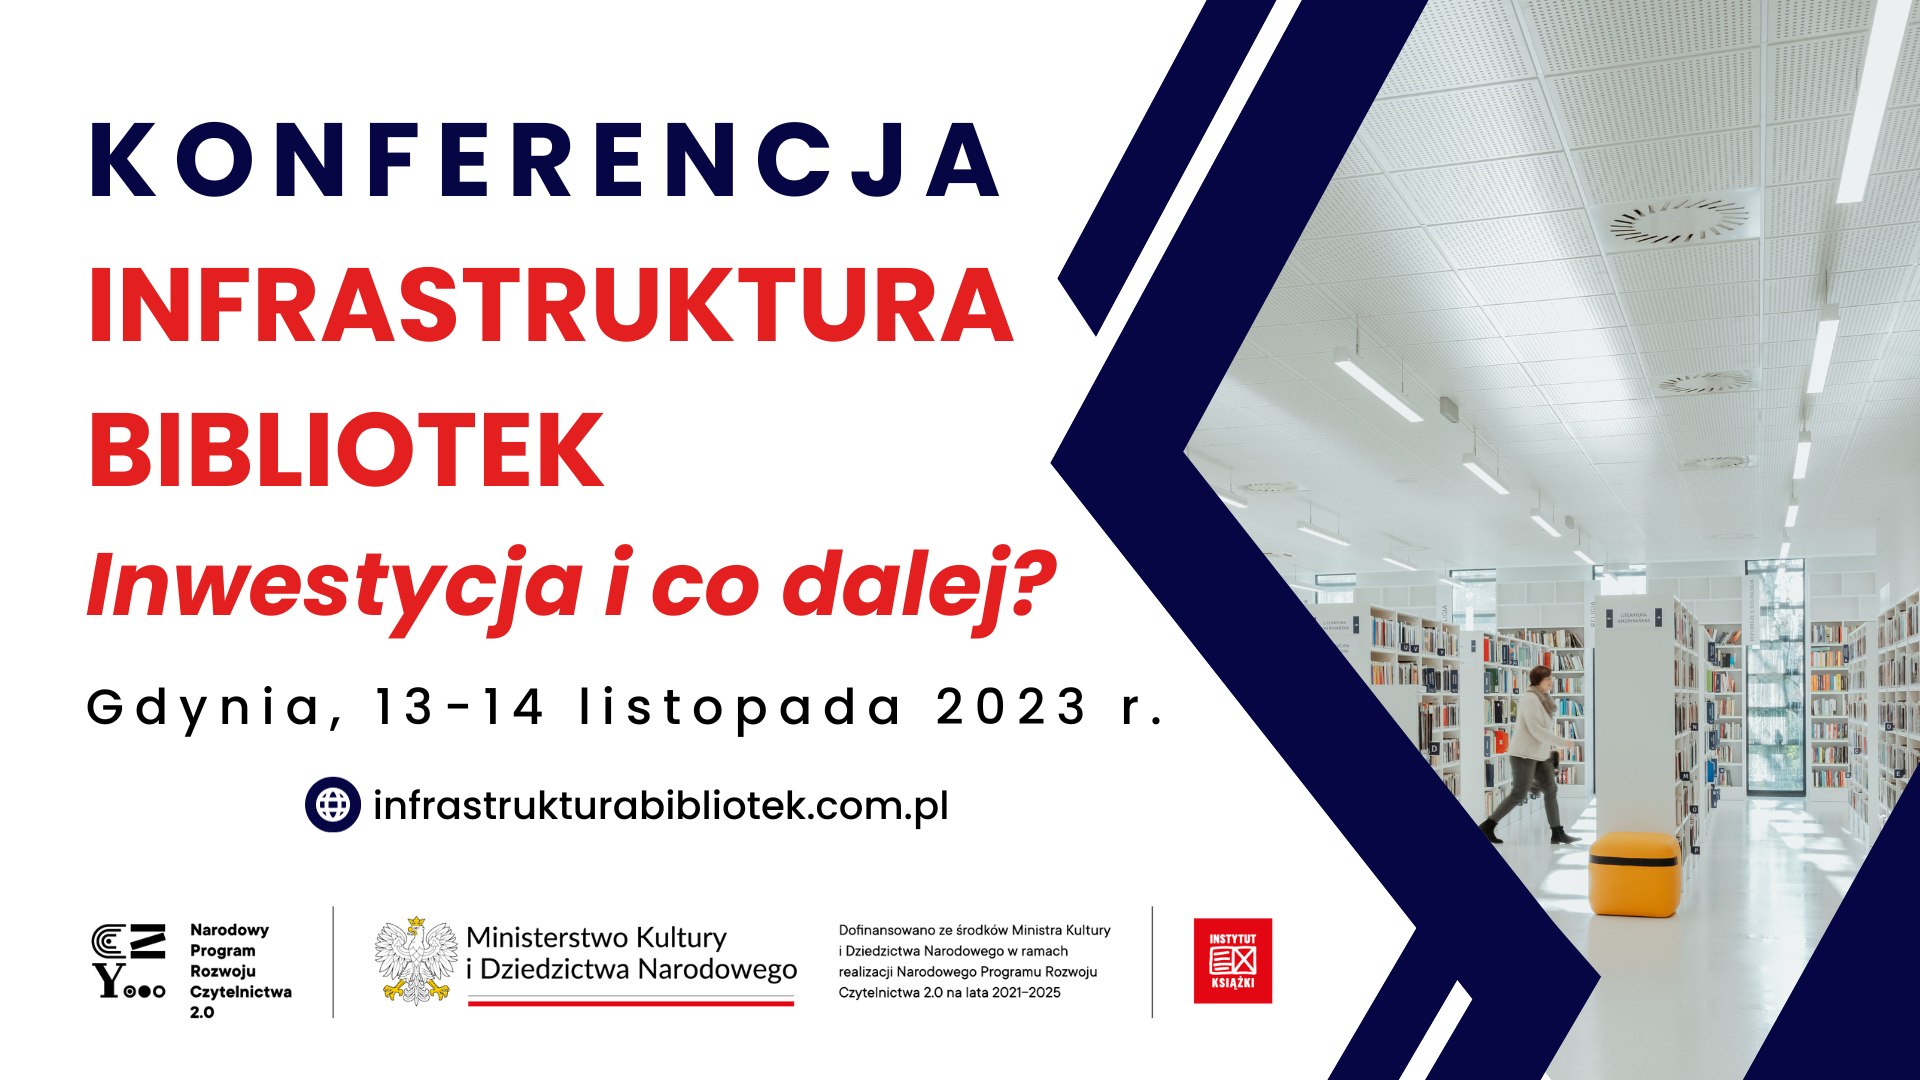 plakat informacyjny konferencja infrastruktura bibliotek - inwestycja i co dalej? Gdynia 13-14 listopada 2023 r.